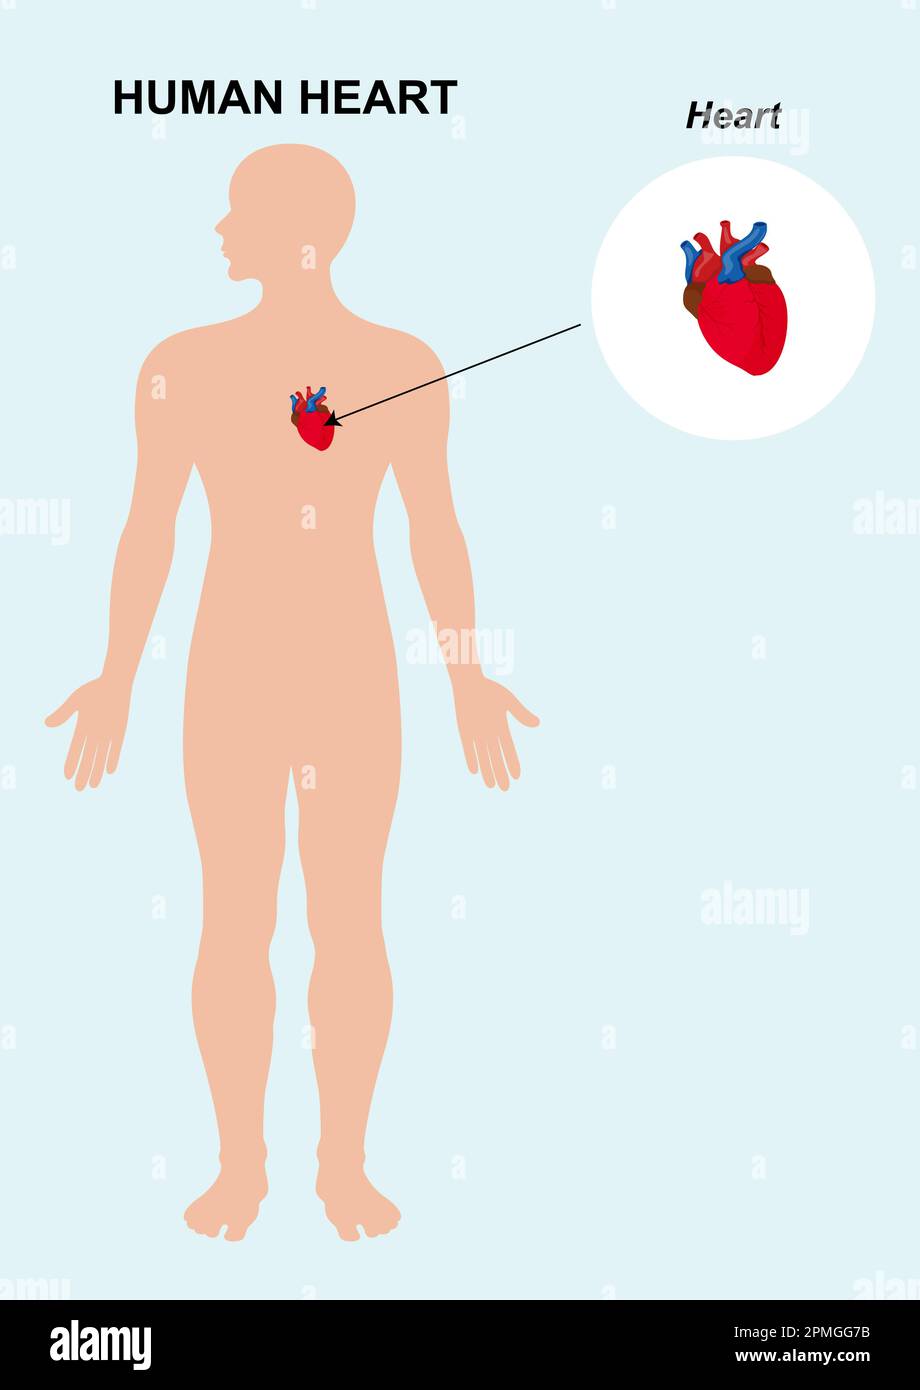 Anatomia dell'organo del cuore umano. illustrazione vettoriale dello sfondo isolato del cuore umano Illustrazione Vettoriale